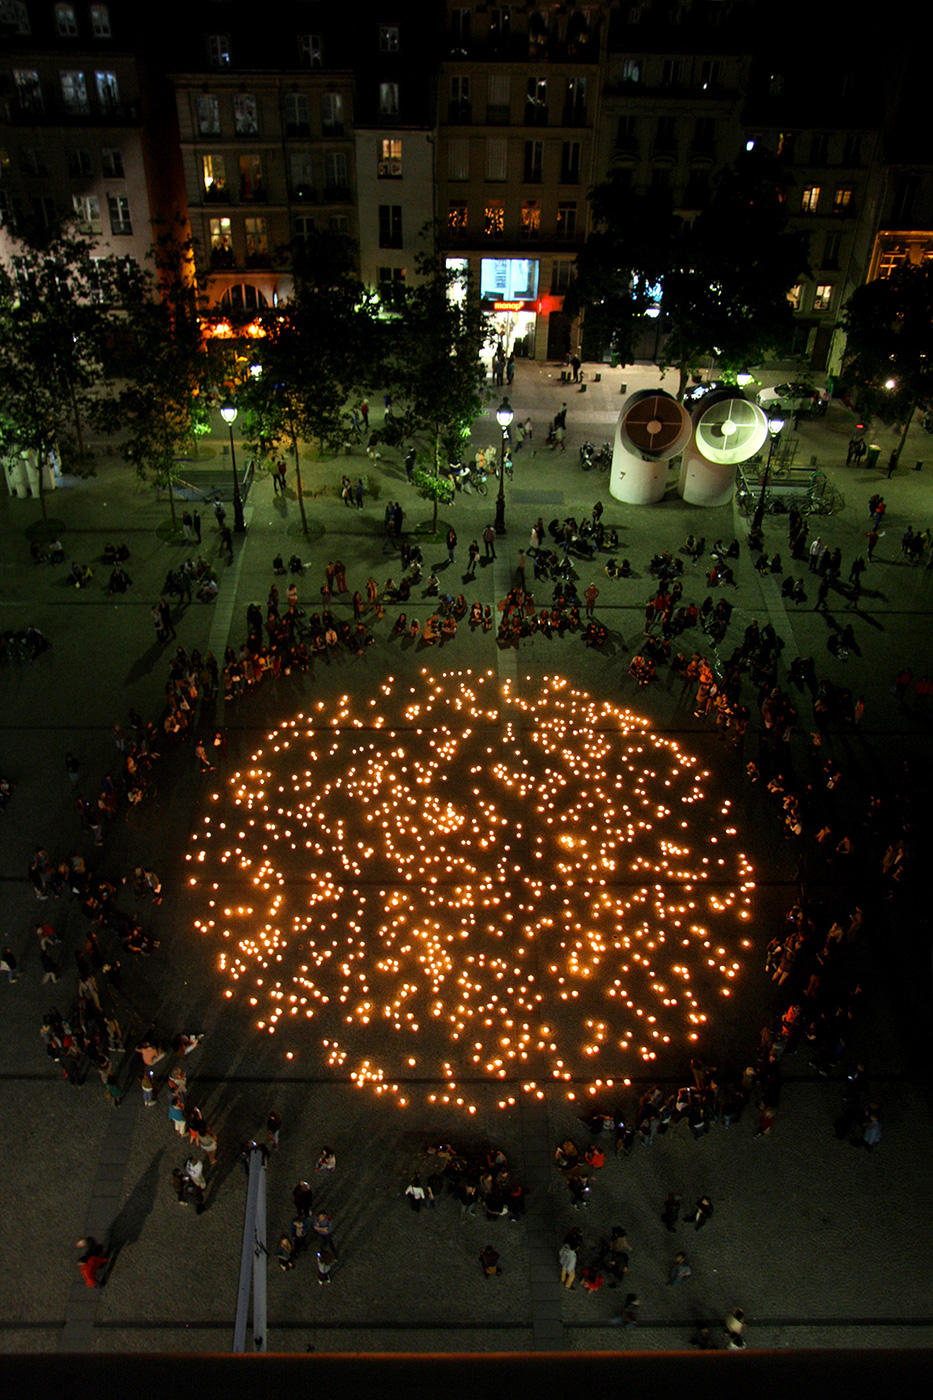 I will keep a light burning - Centre Pompidou, Paris, 2014